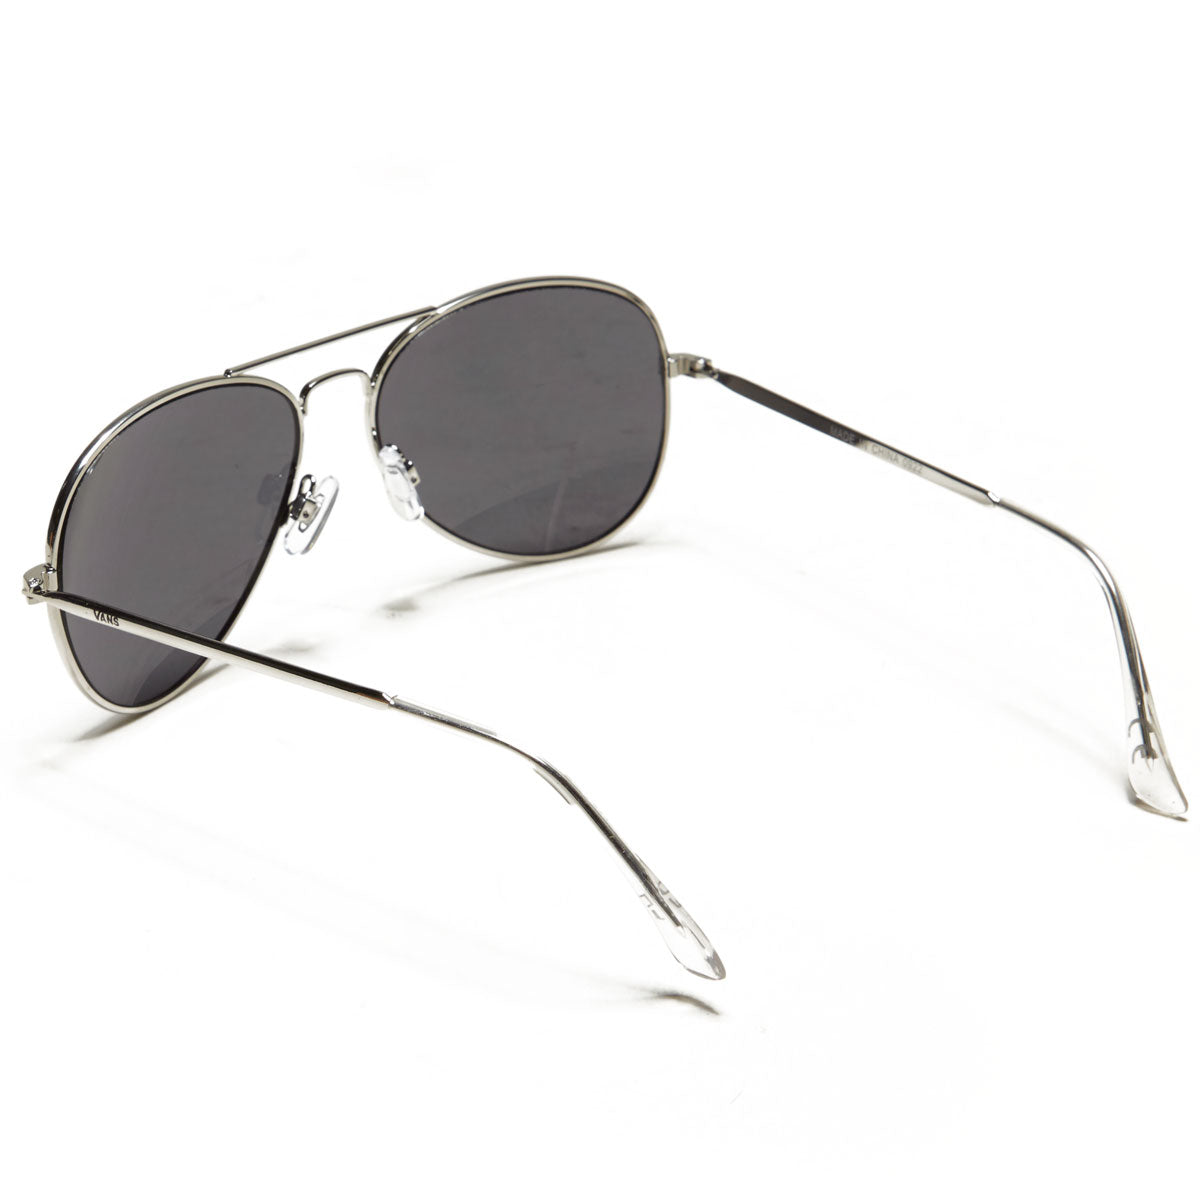 Vans Henderson II Sunglasses - Silver image 2